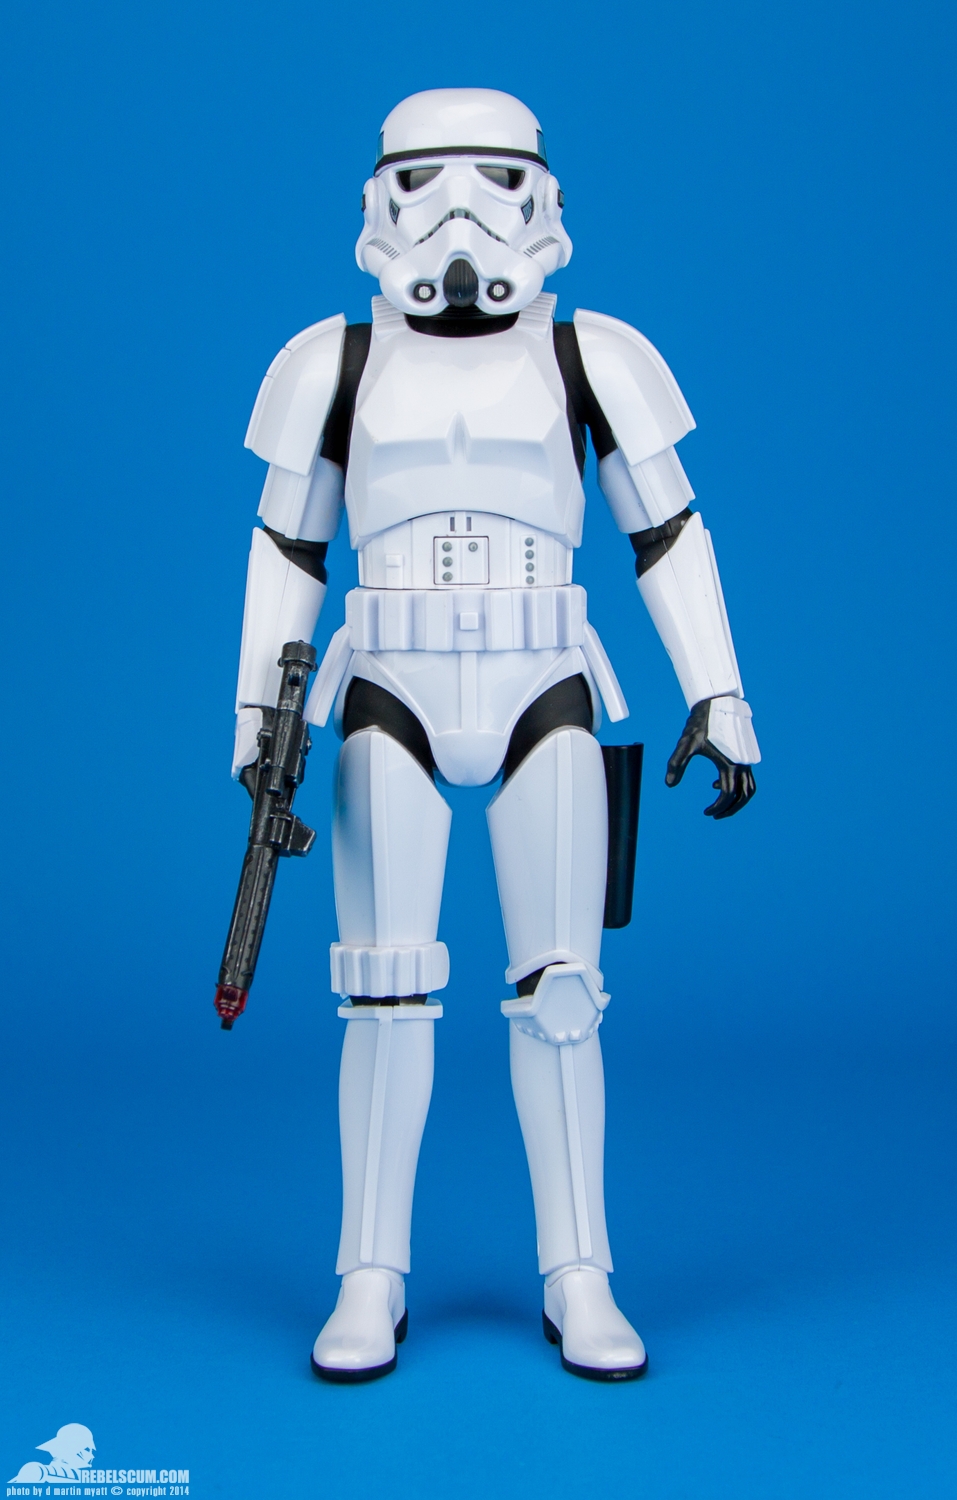 Disney-Store-Exclusive-Talking-Stormtrooper-001.jpg